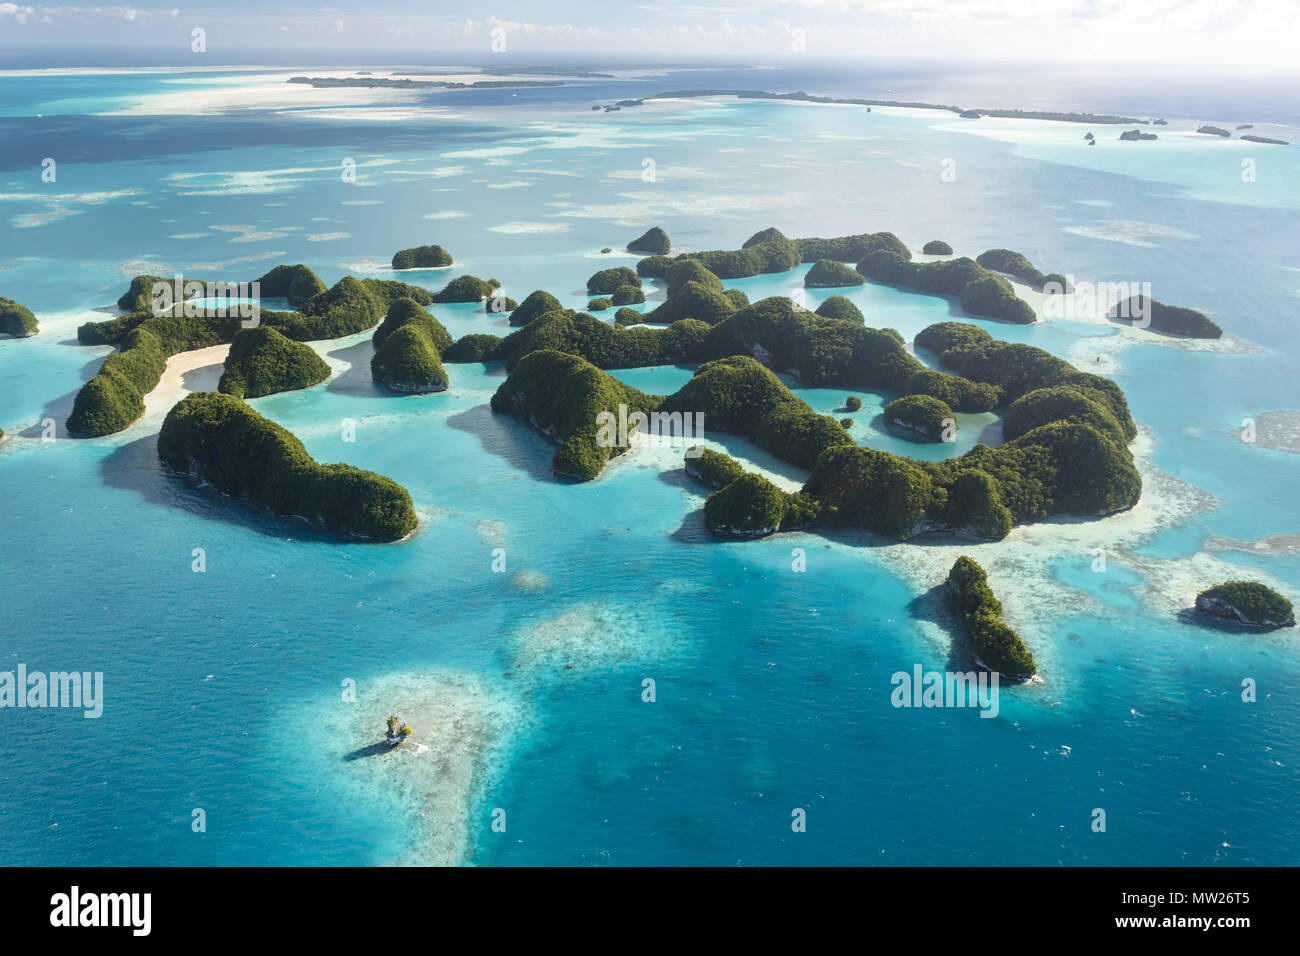 Blick aus der Vogelperspektive auf Korallenriffe, Korallenatolle und eigenartig geformte Inseln, umgeben vom türkisfarbenen Wasser des südpazifiks Palau. Stockfoto